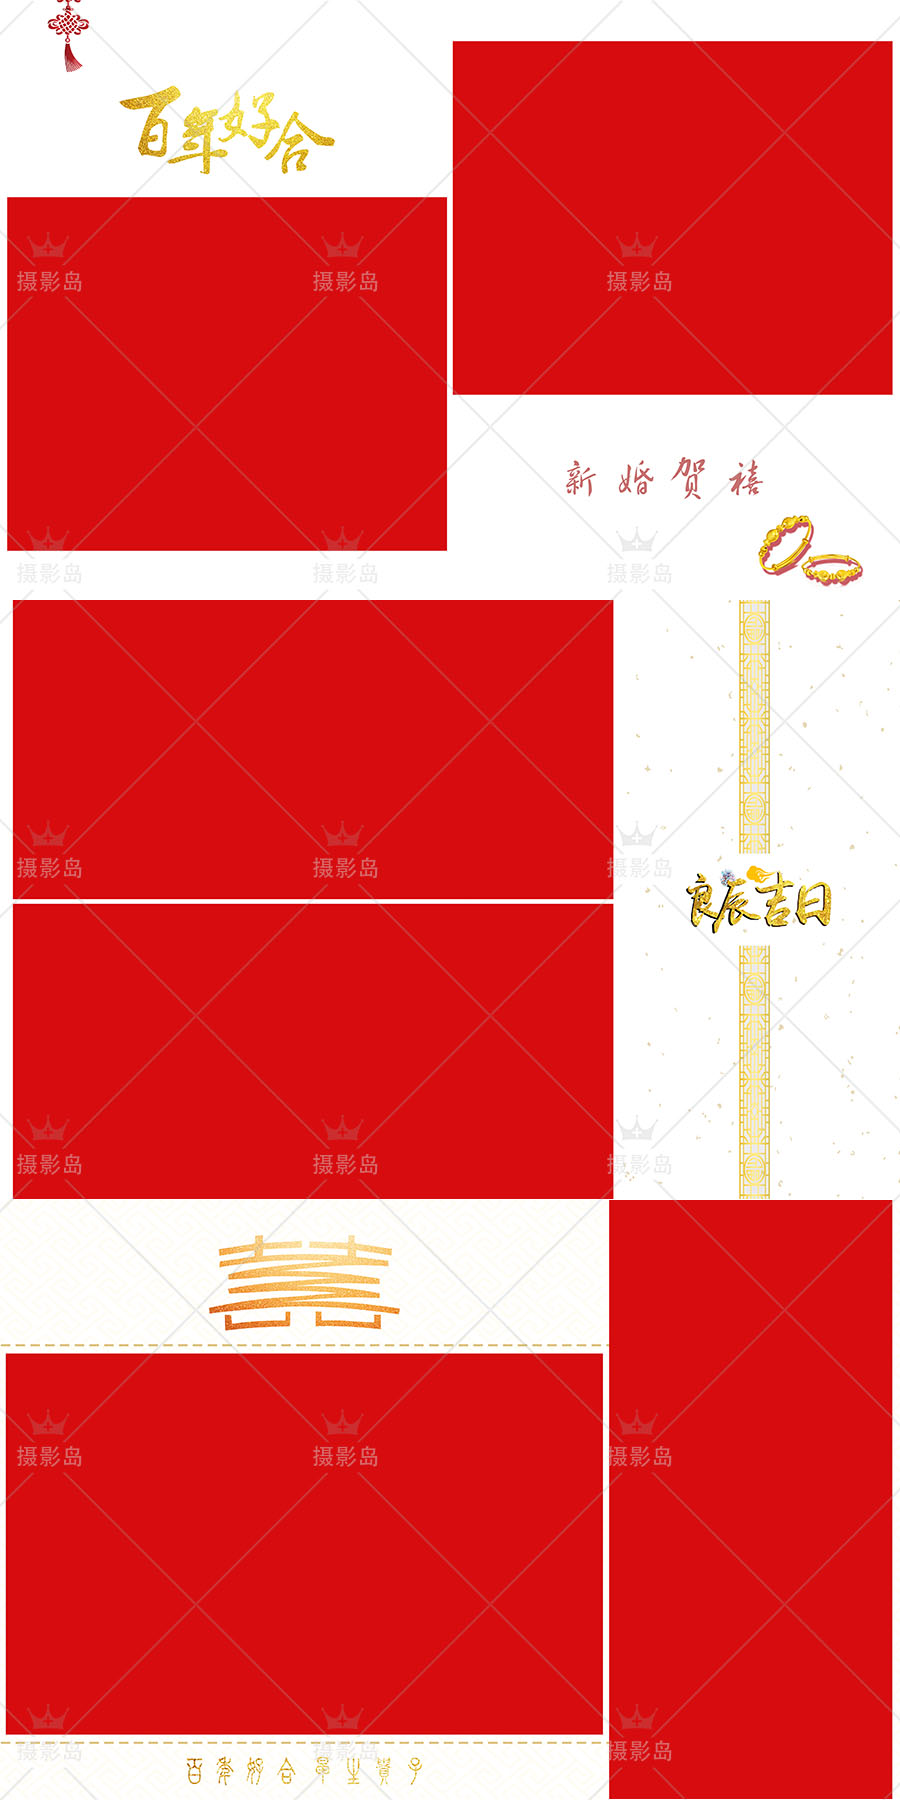 中国风古装婚纱照摄影红色PSD相册排版模板素材